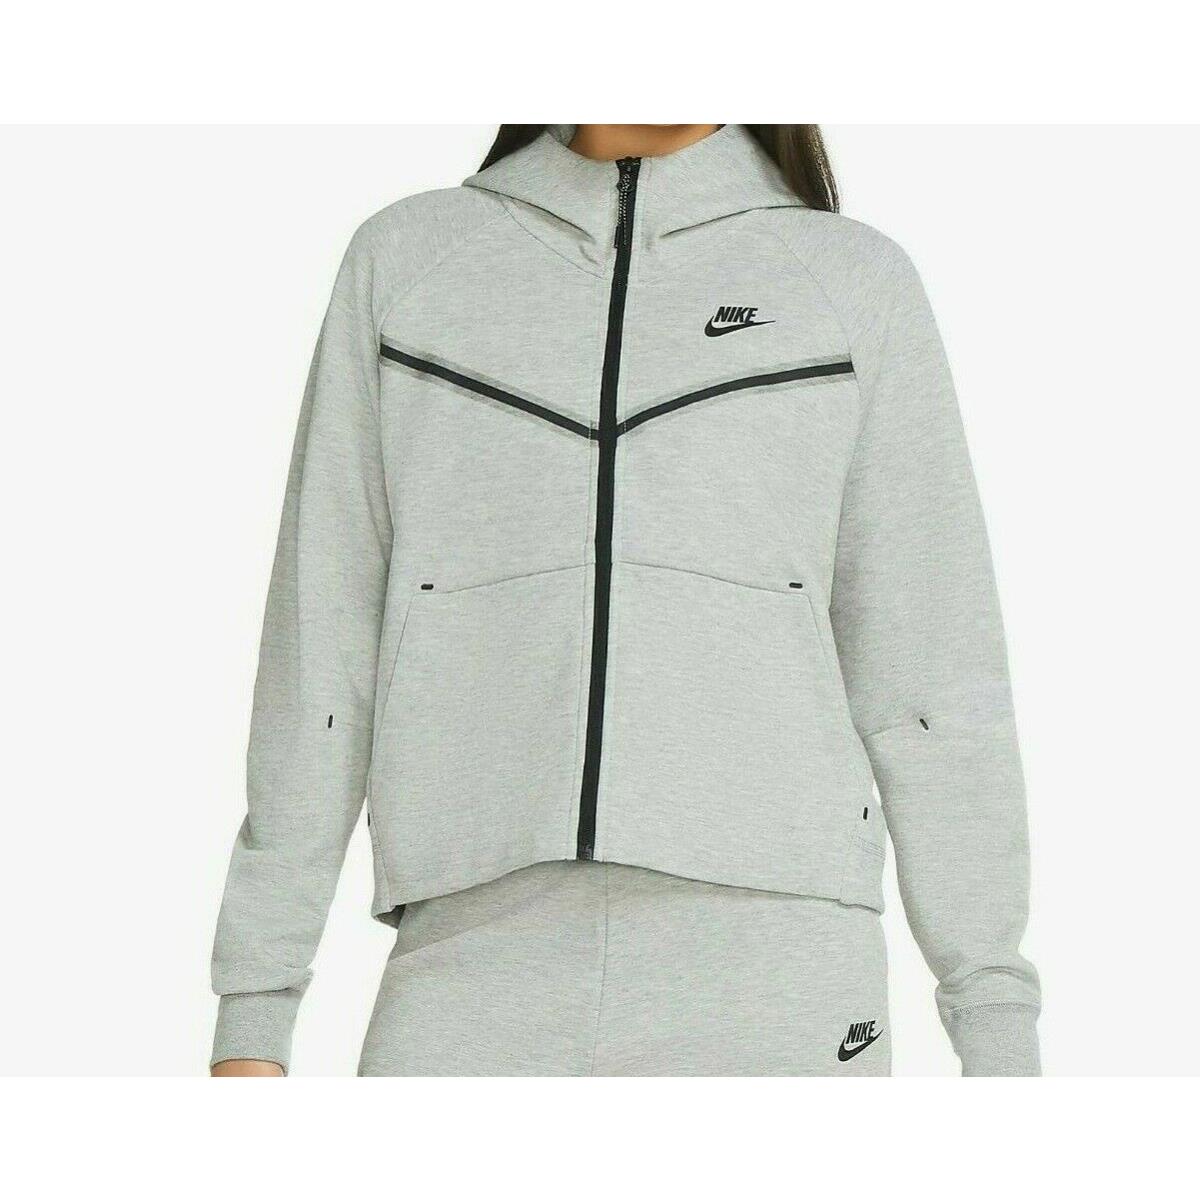 Nike Womens Sportwear Tech Fleece Windrunner Grey Zip Hoodie Jacket